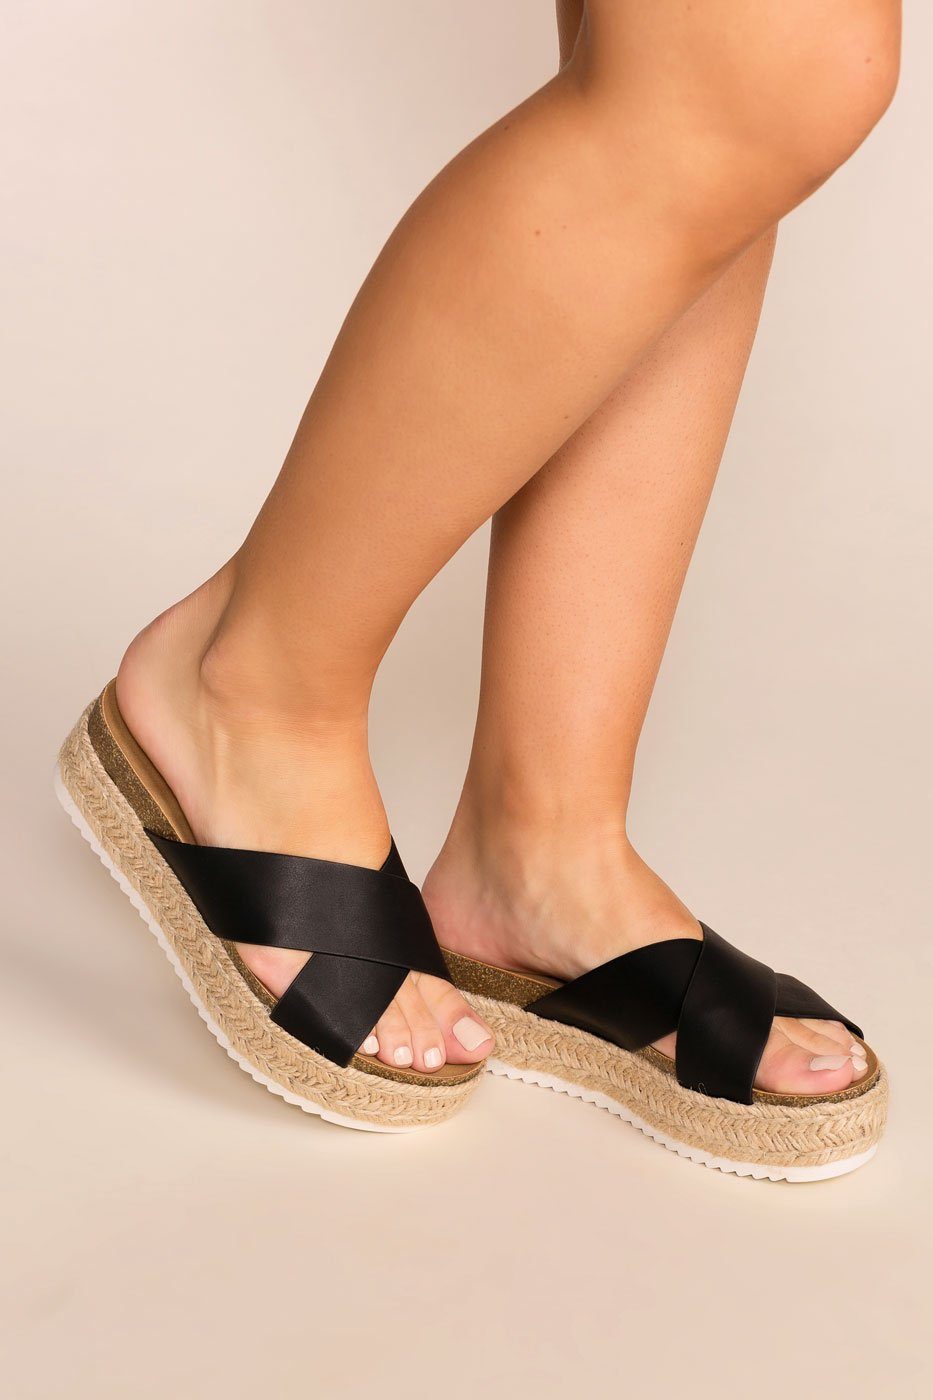 slide on platform sandals